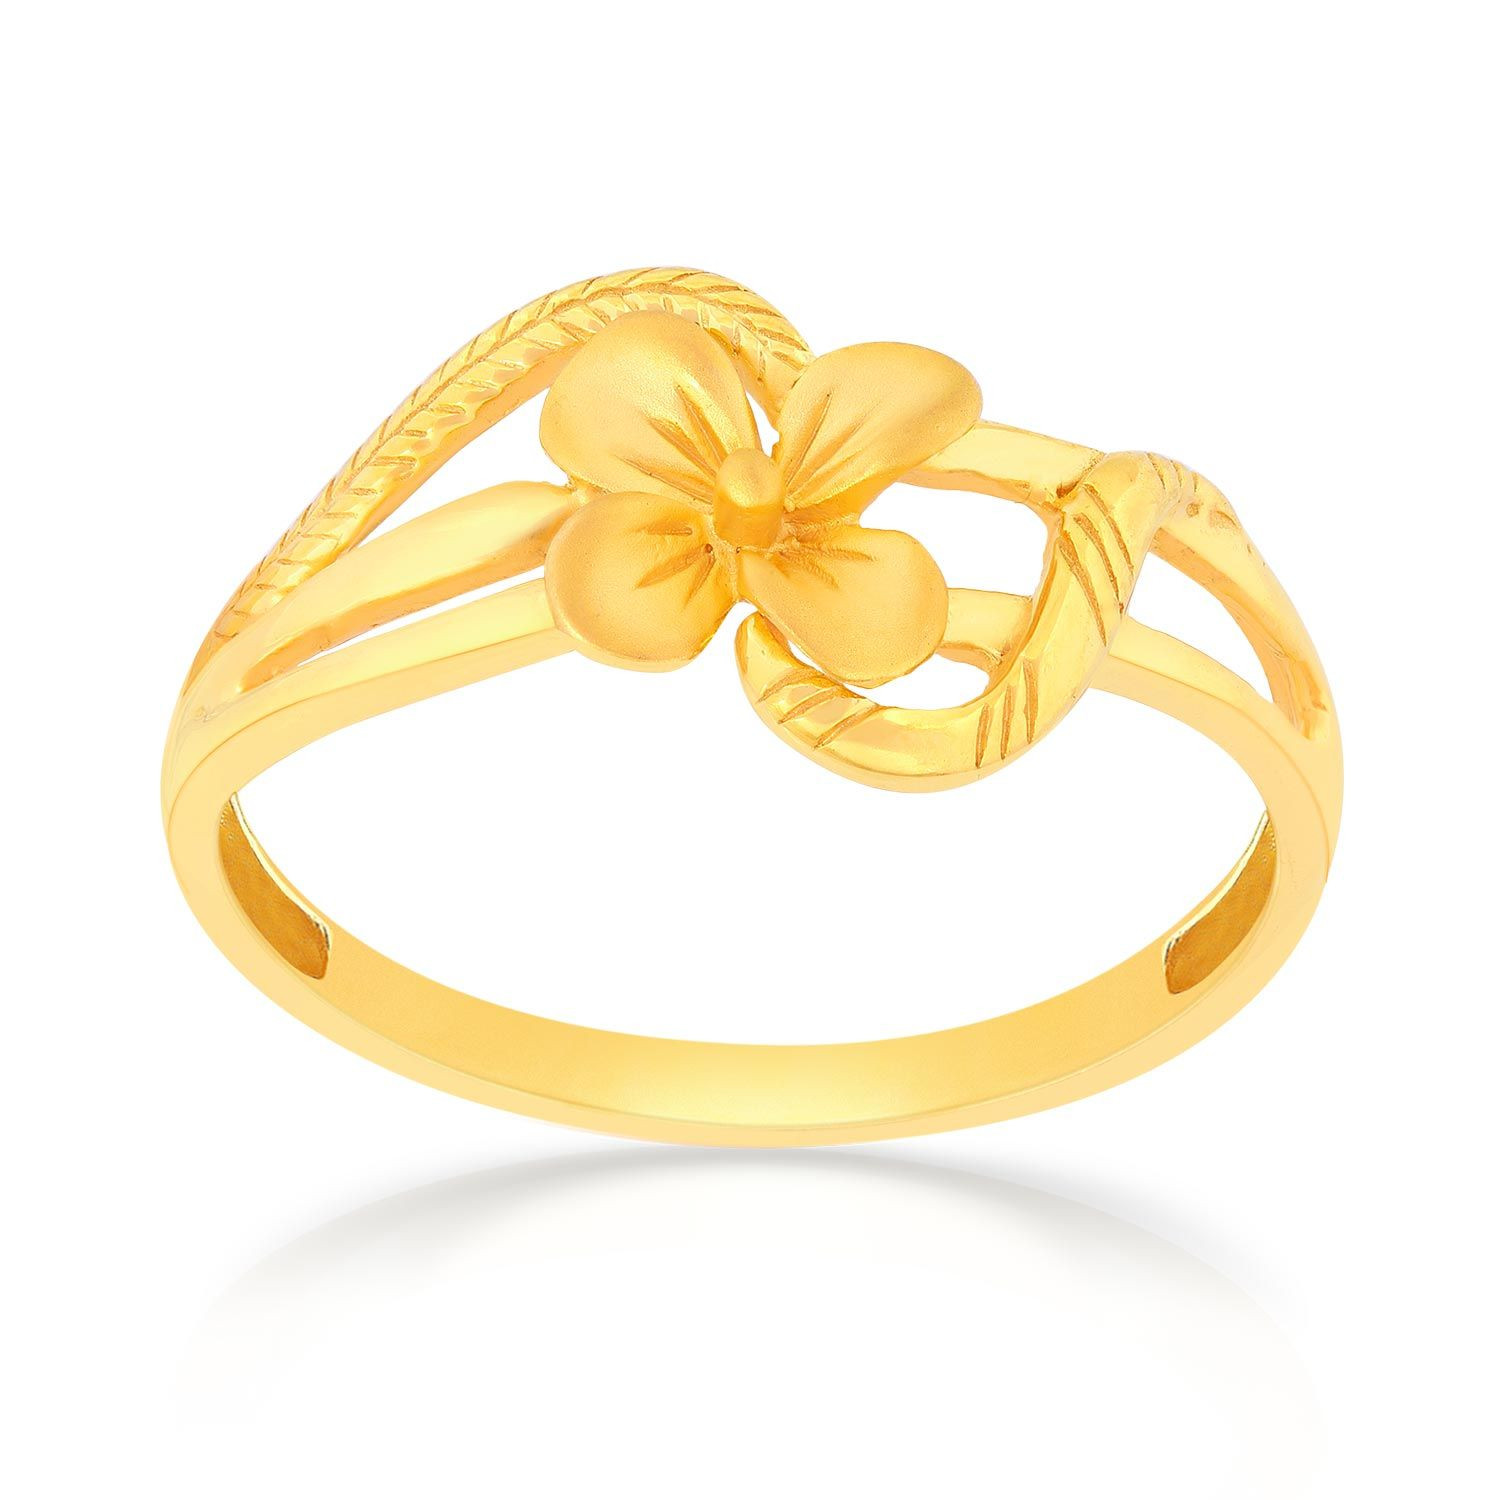 Malabar Gold Ring SKYFRDZ001